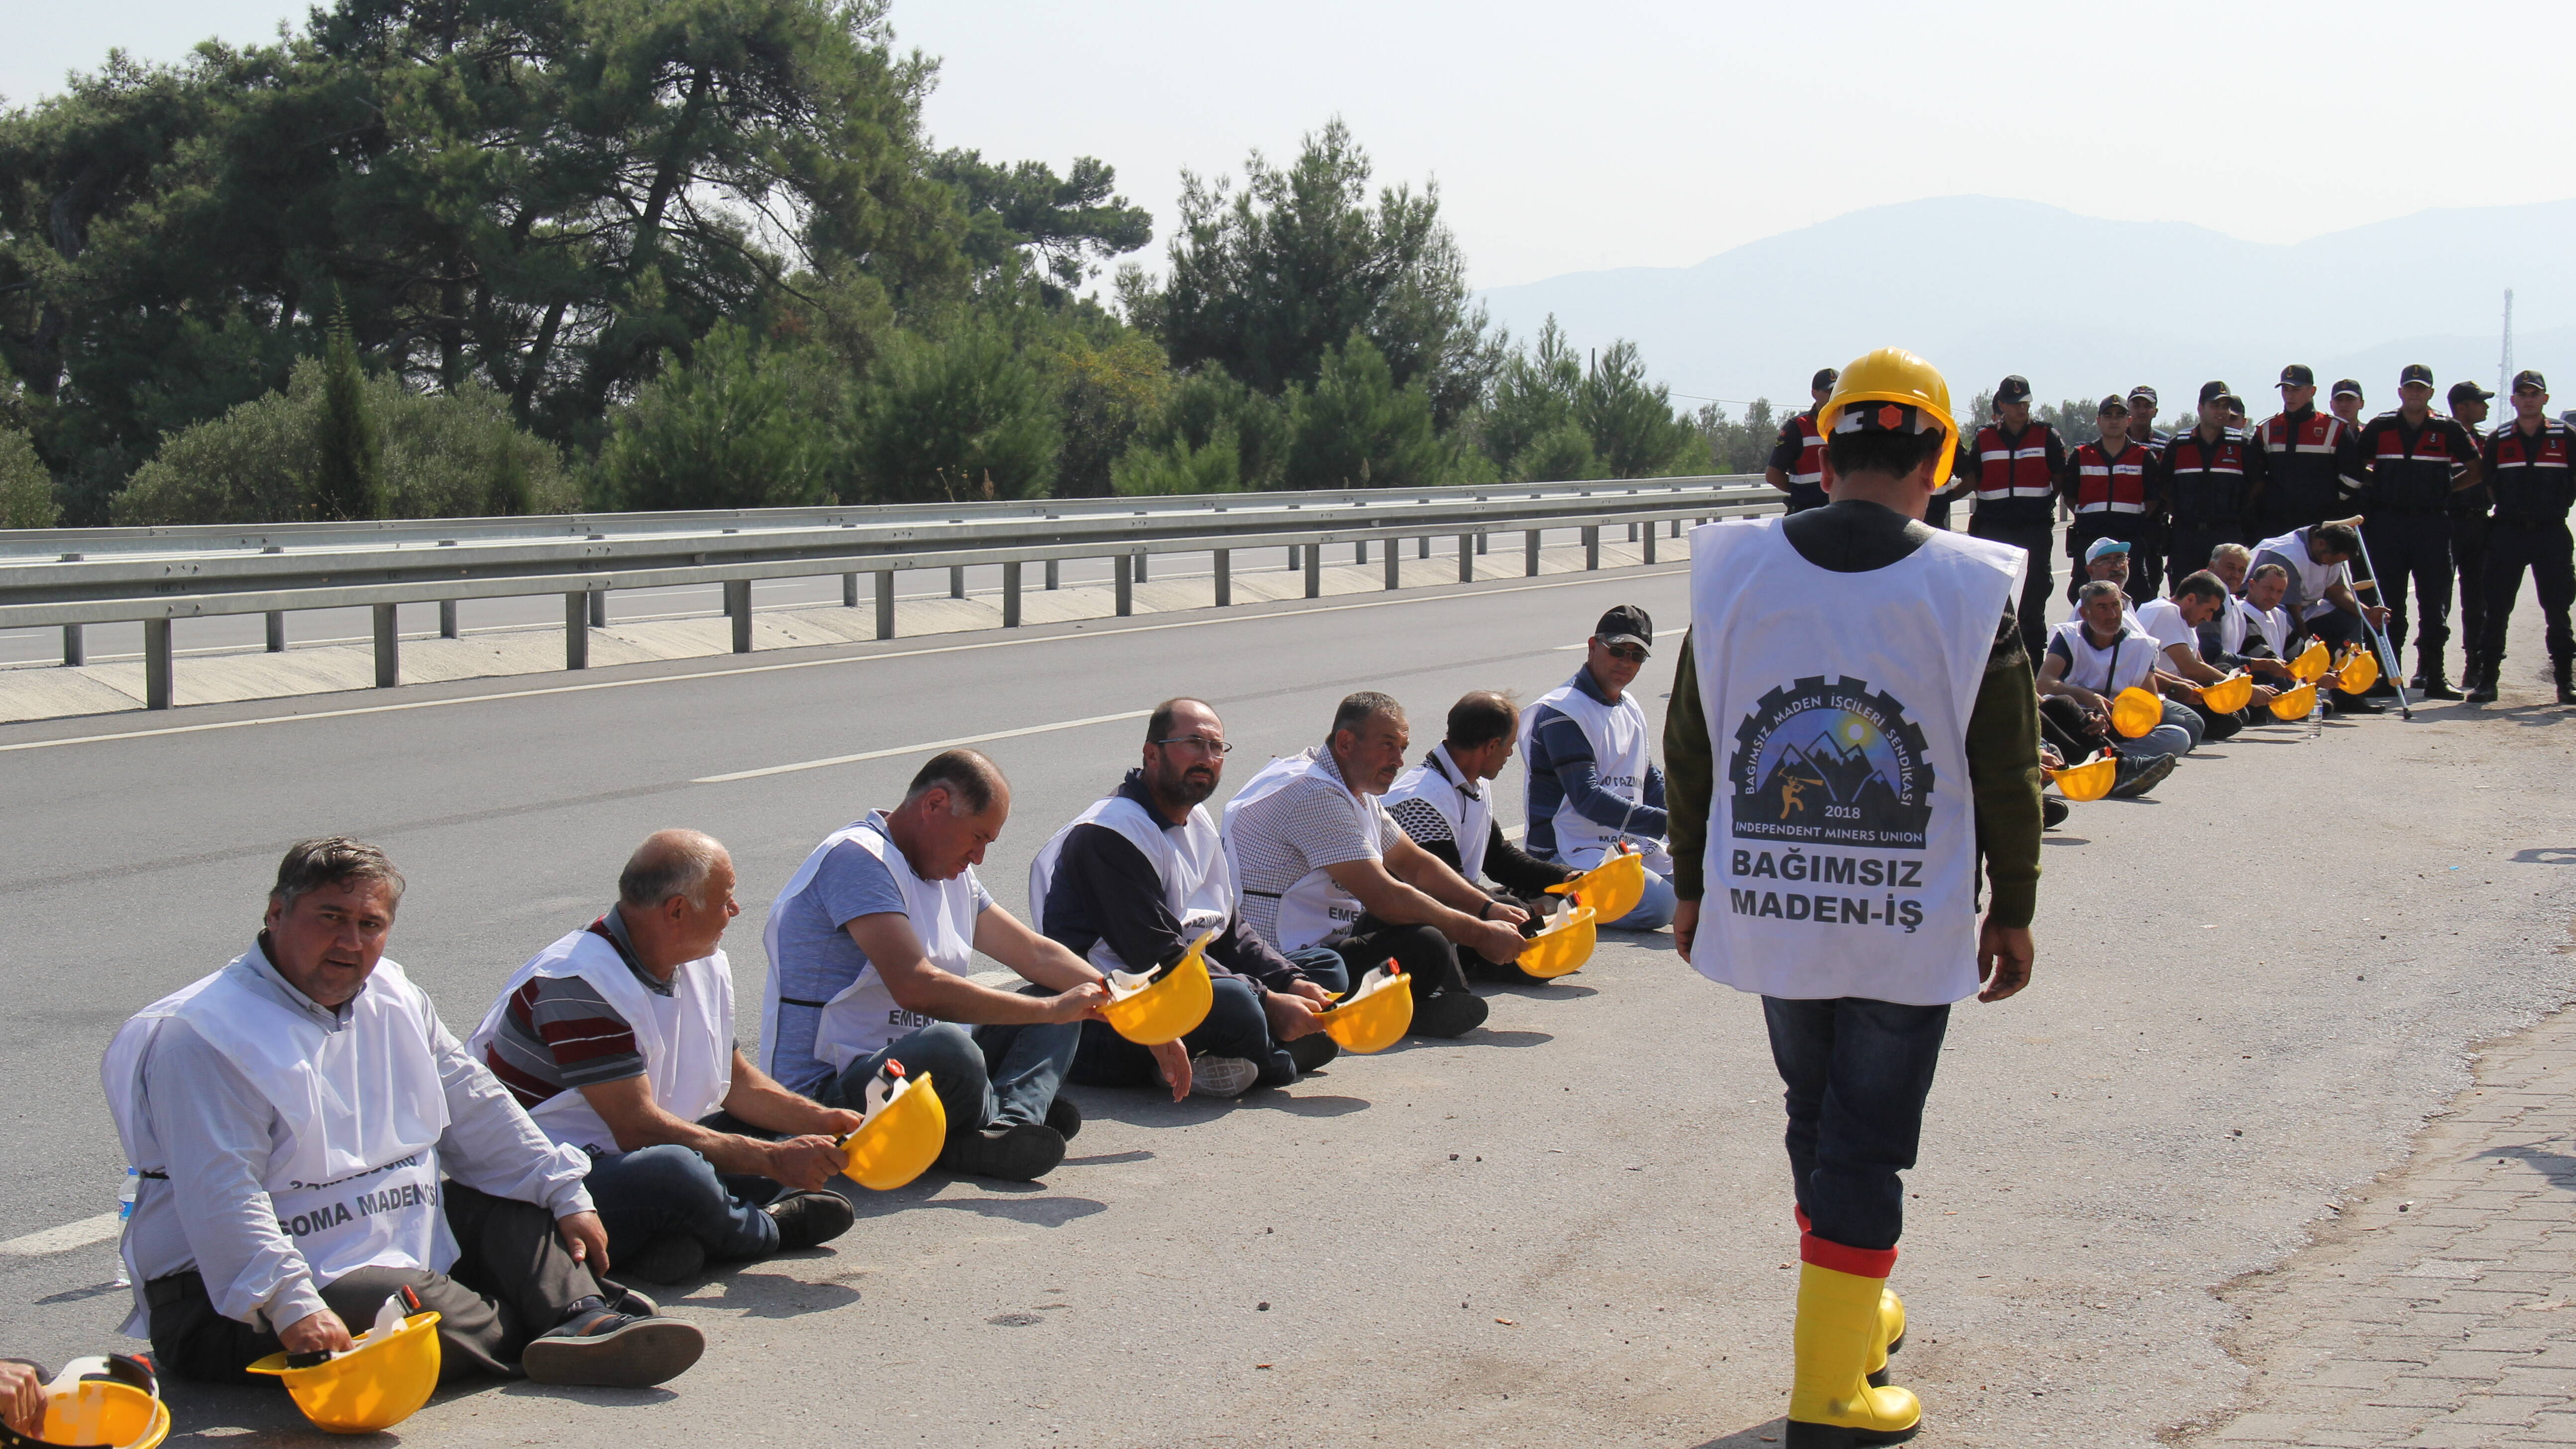 Der Protestmarsch der entlassenen Bergarbeiter nach Ankara wird von der Polizei blockiert.